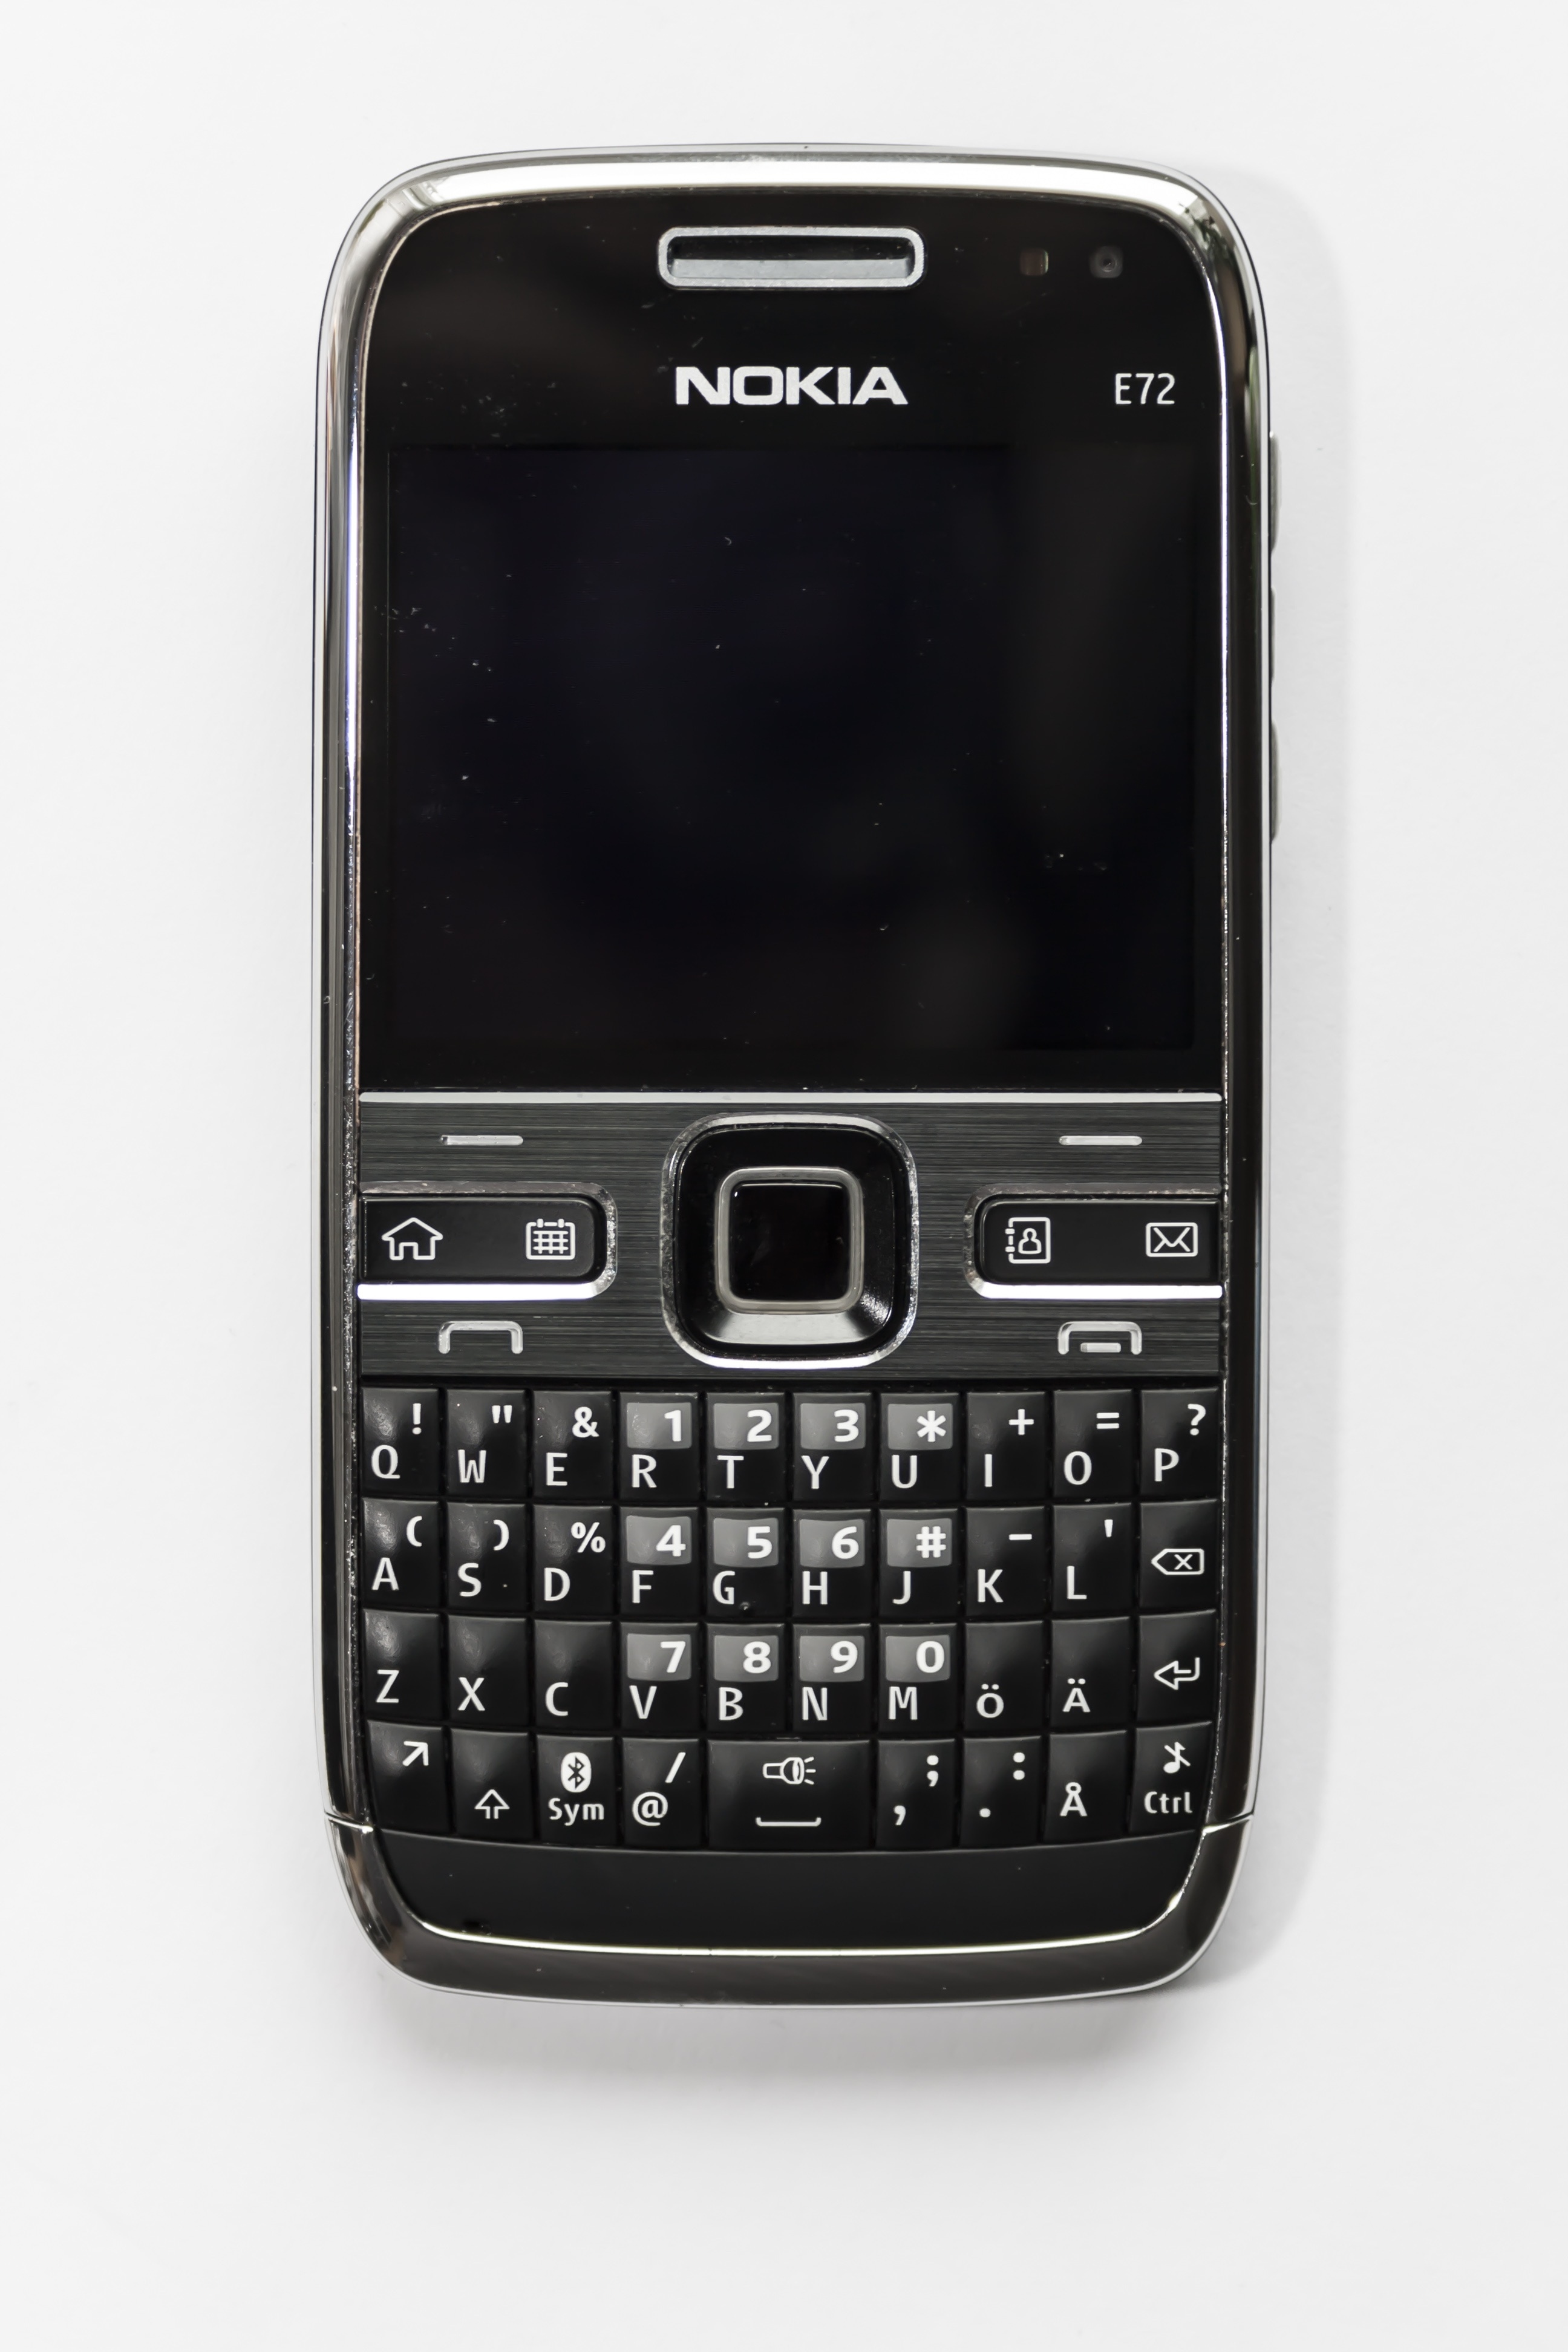 Nokia E72 đen sẽ trở nên ấn tượng hơn với những hình nền độc đáo và tuyệt đẹp. Từ những hình ảnh đơn giản cho đến những hình nền độc đáo, bạn sẽ tìm thấy một loại hình ảnh phù hợp với sở thích của mình. Hãy tải xuống và cập nhật ngay bây giờ để thấy sự khác biệt của màn hình điện thoại Nokia E72 của bạn.